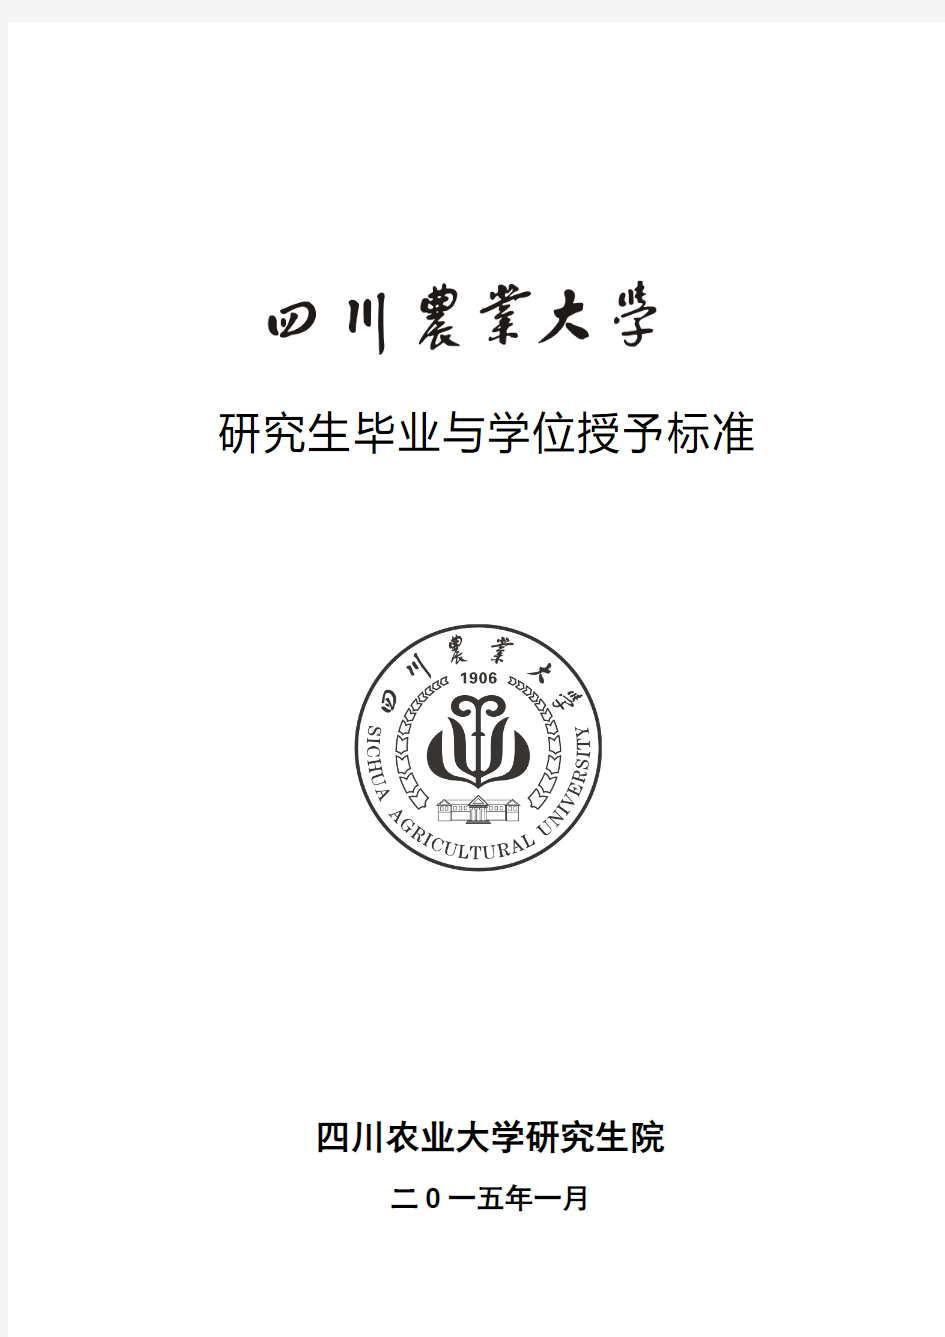 四川农业大学研究生毕业与学位授予标准